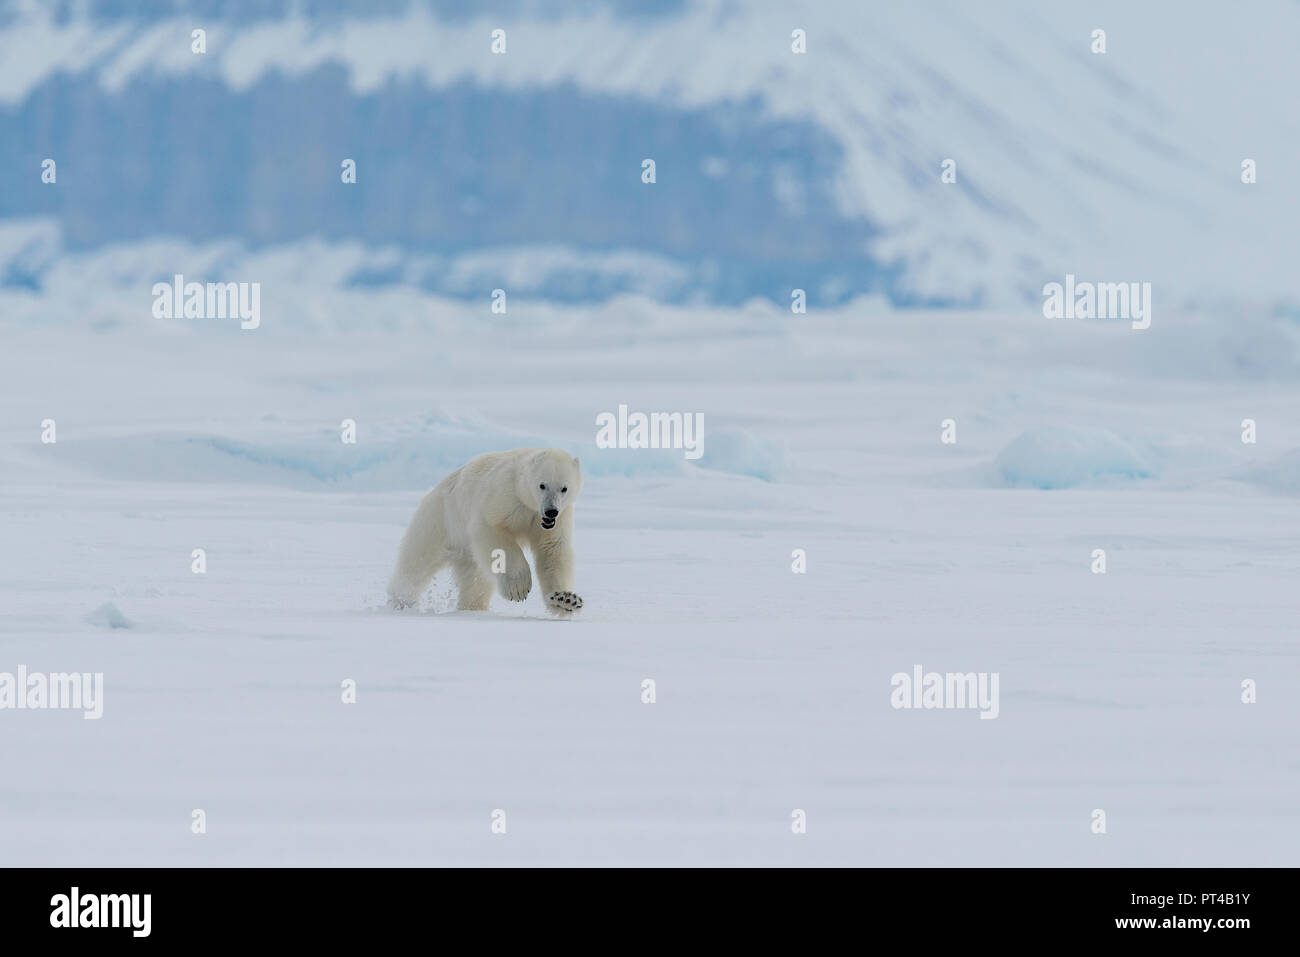 La patrouille de l'ours polaire de glace à l'extrémité nord de l'île de Baffin. Banque D'Images